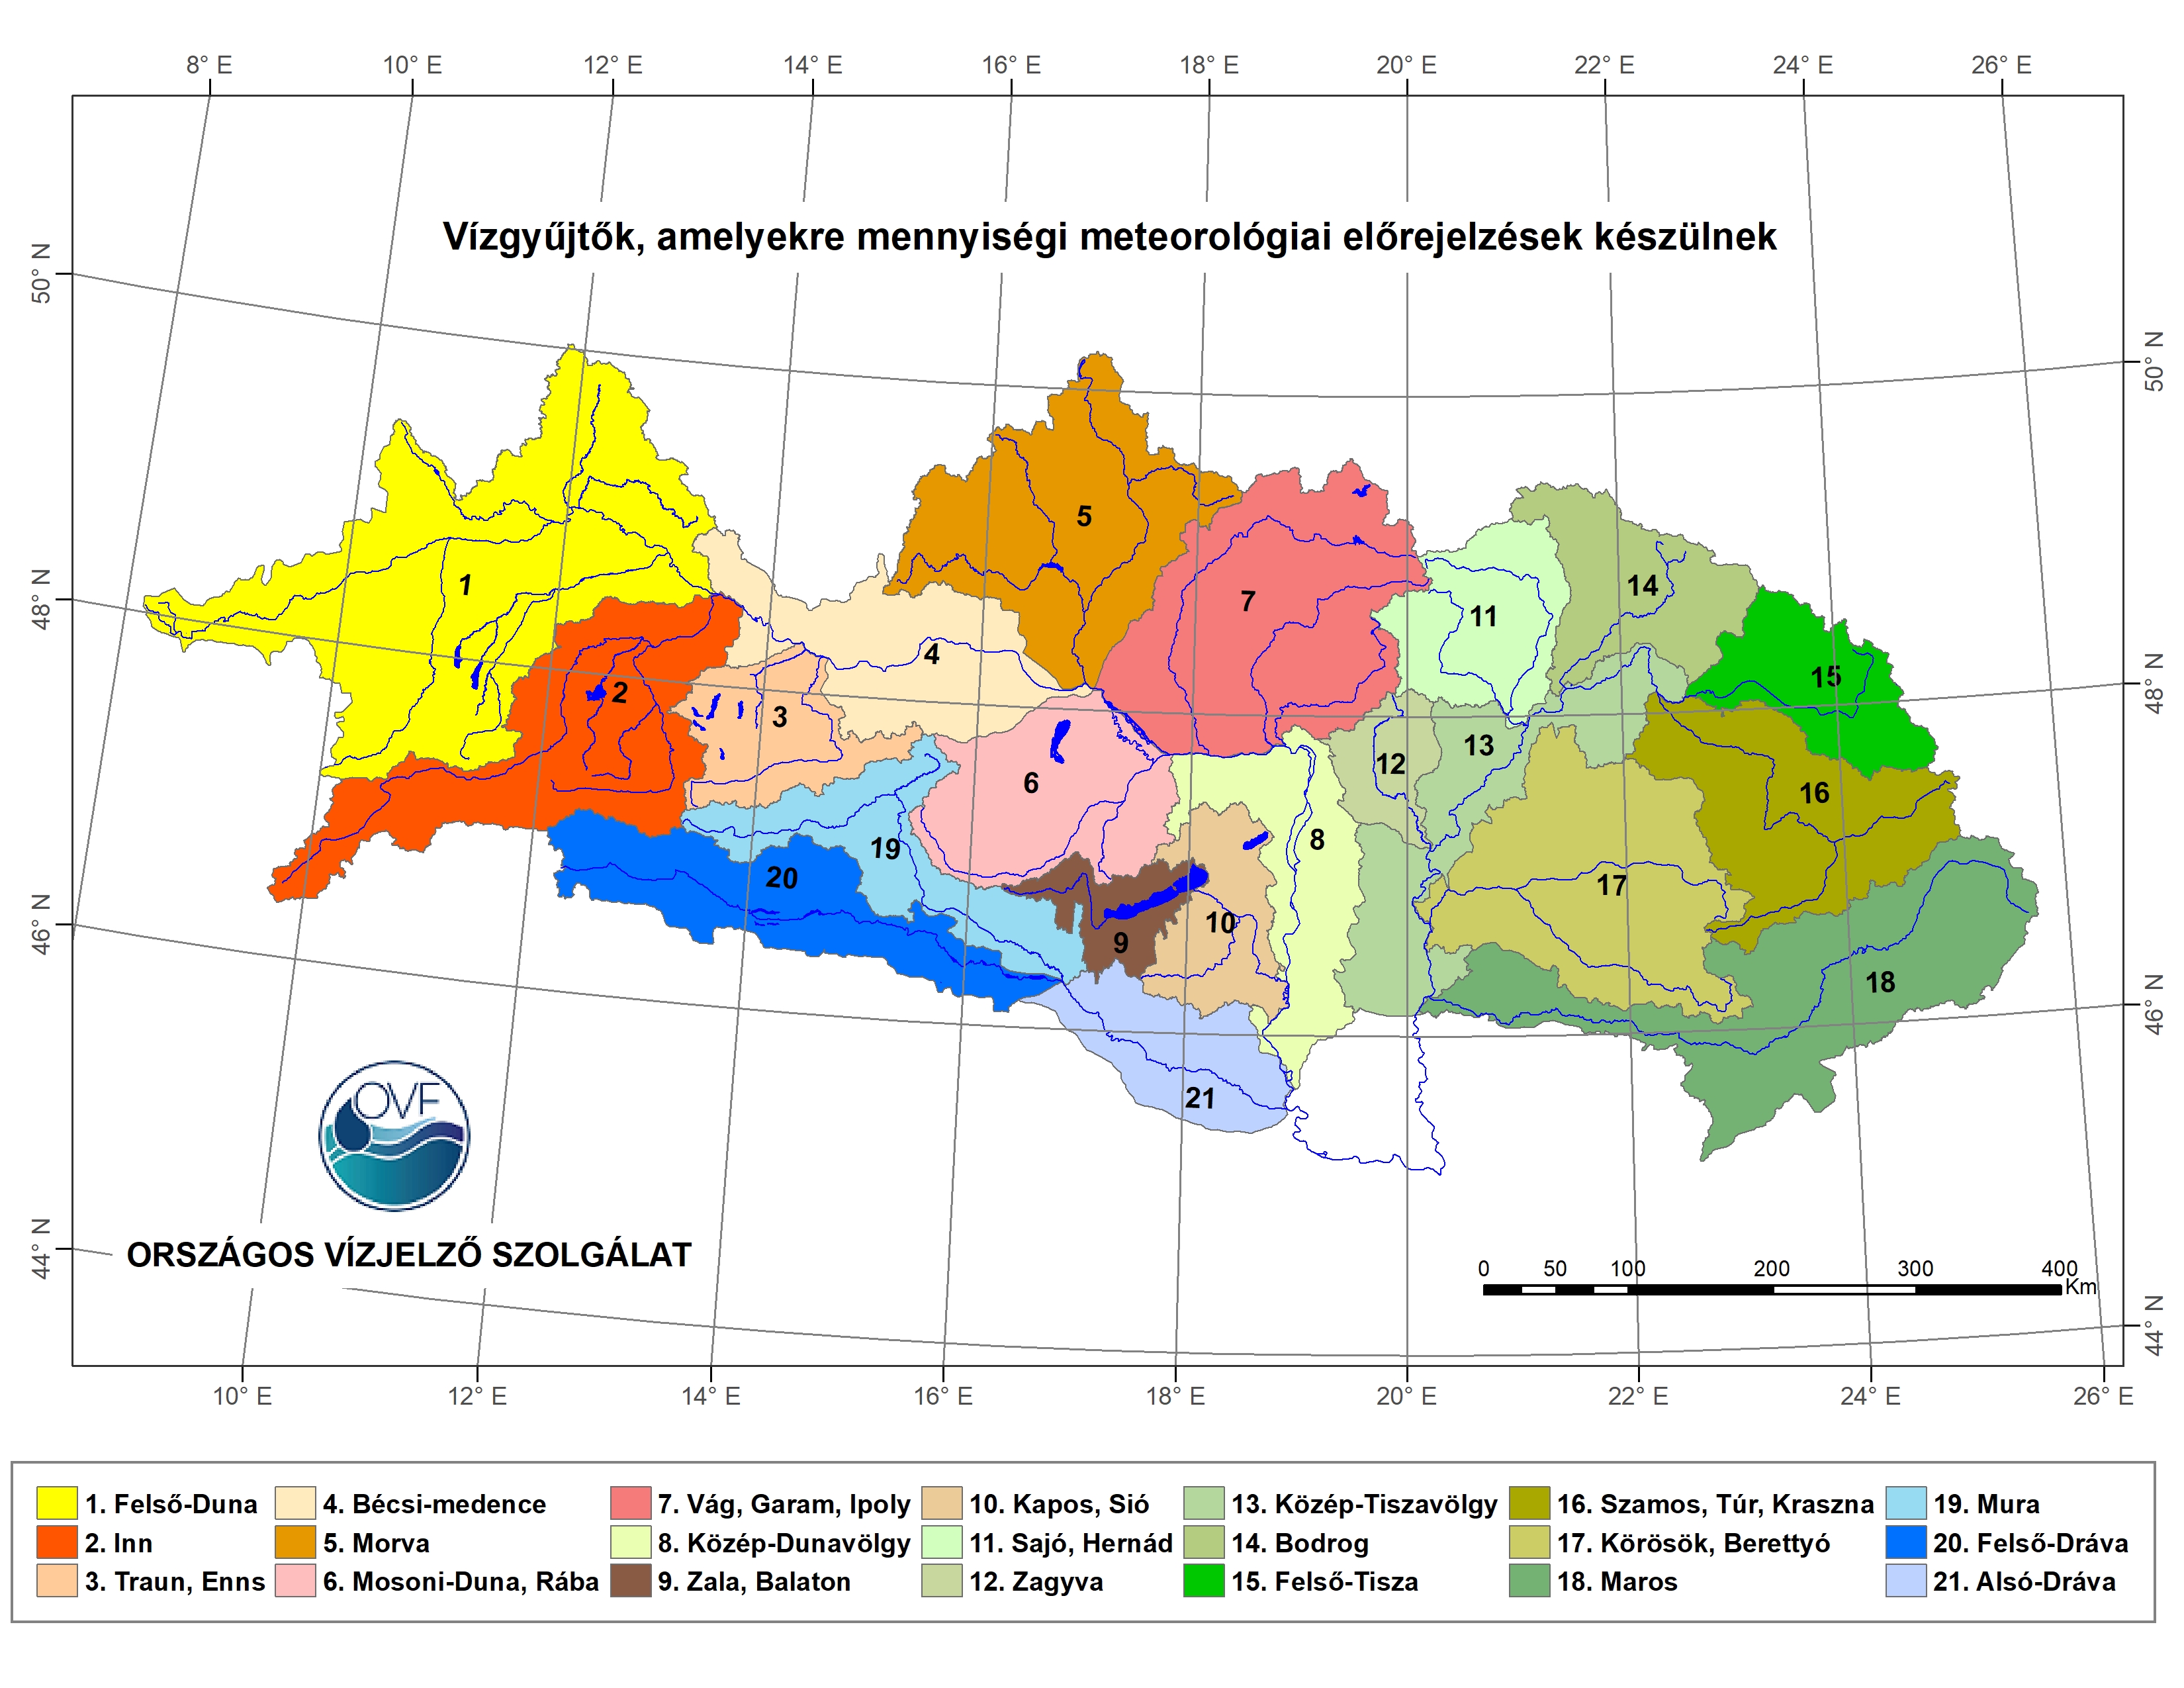  Részvízgyűjtőnkénti csapadék területi átlag előrejelzés a Duna vízgyűjtőjén